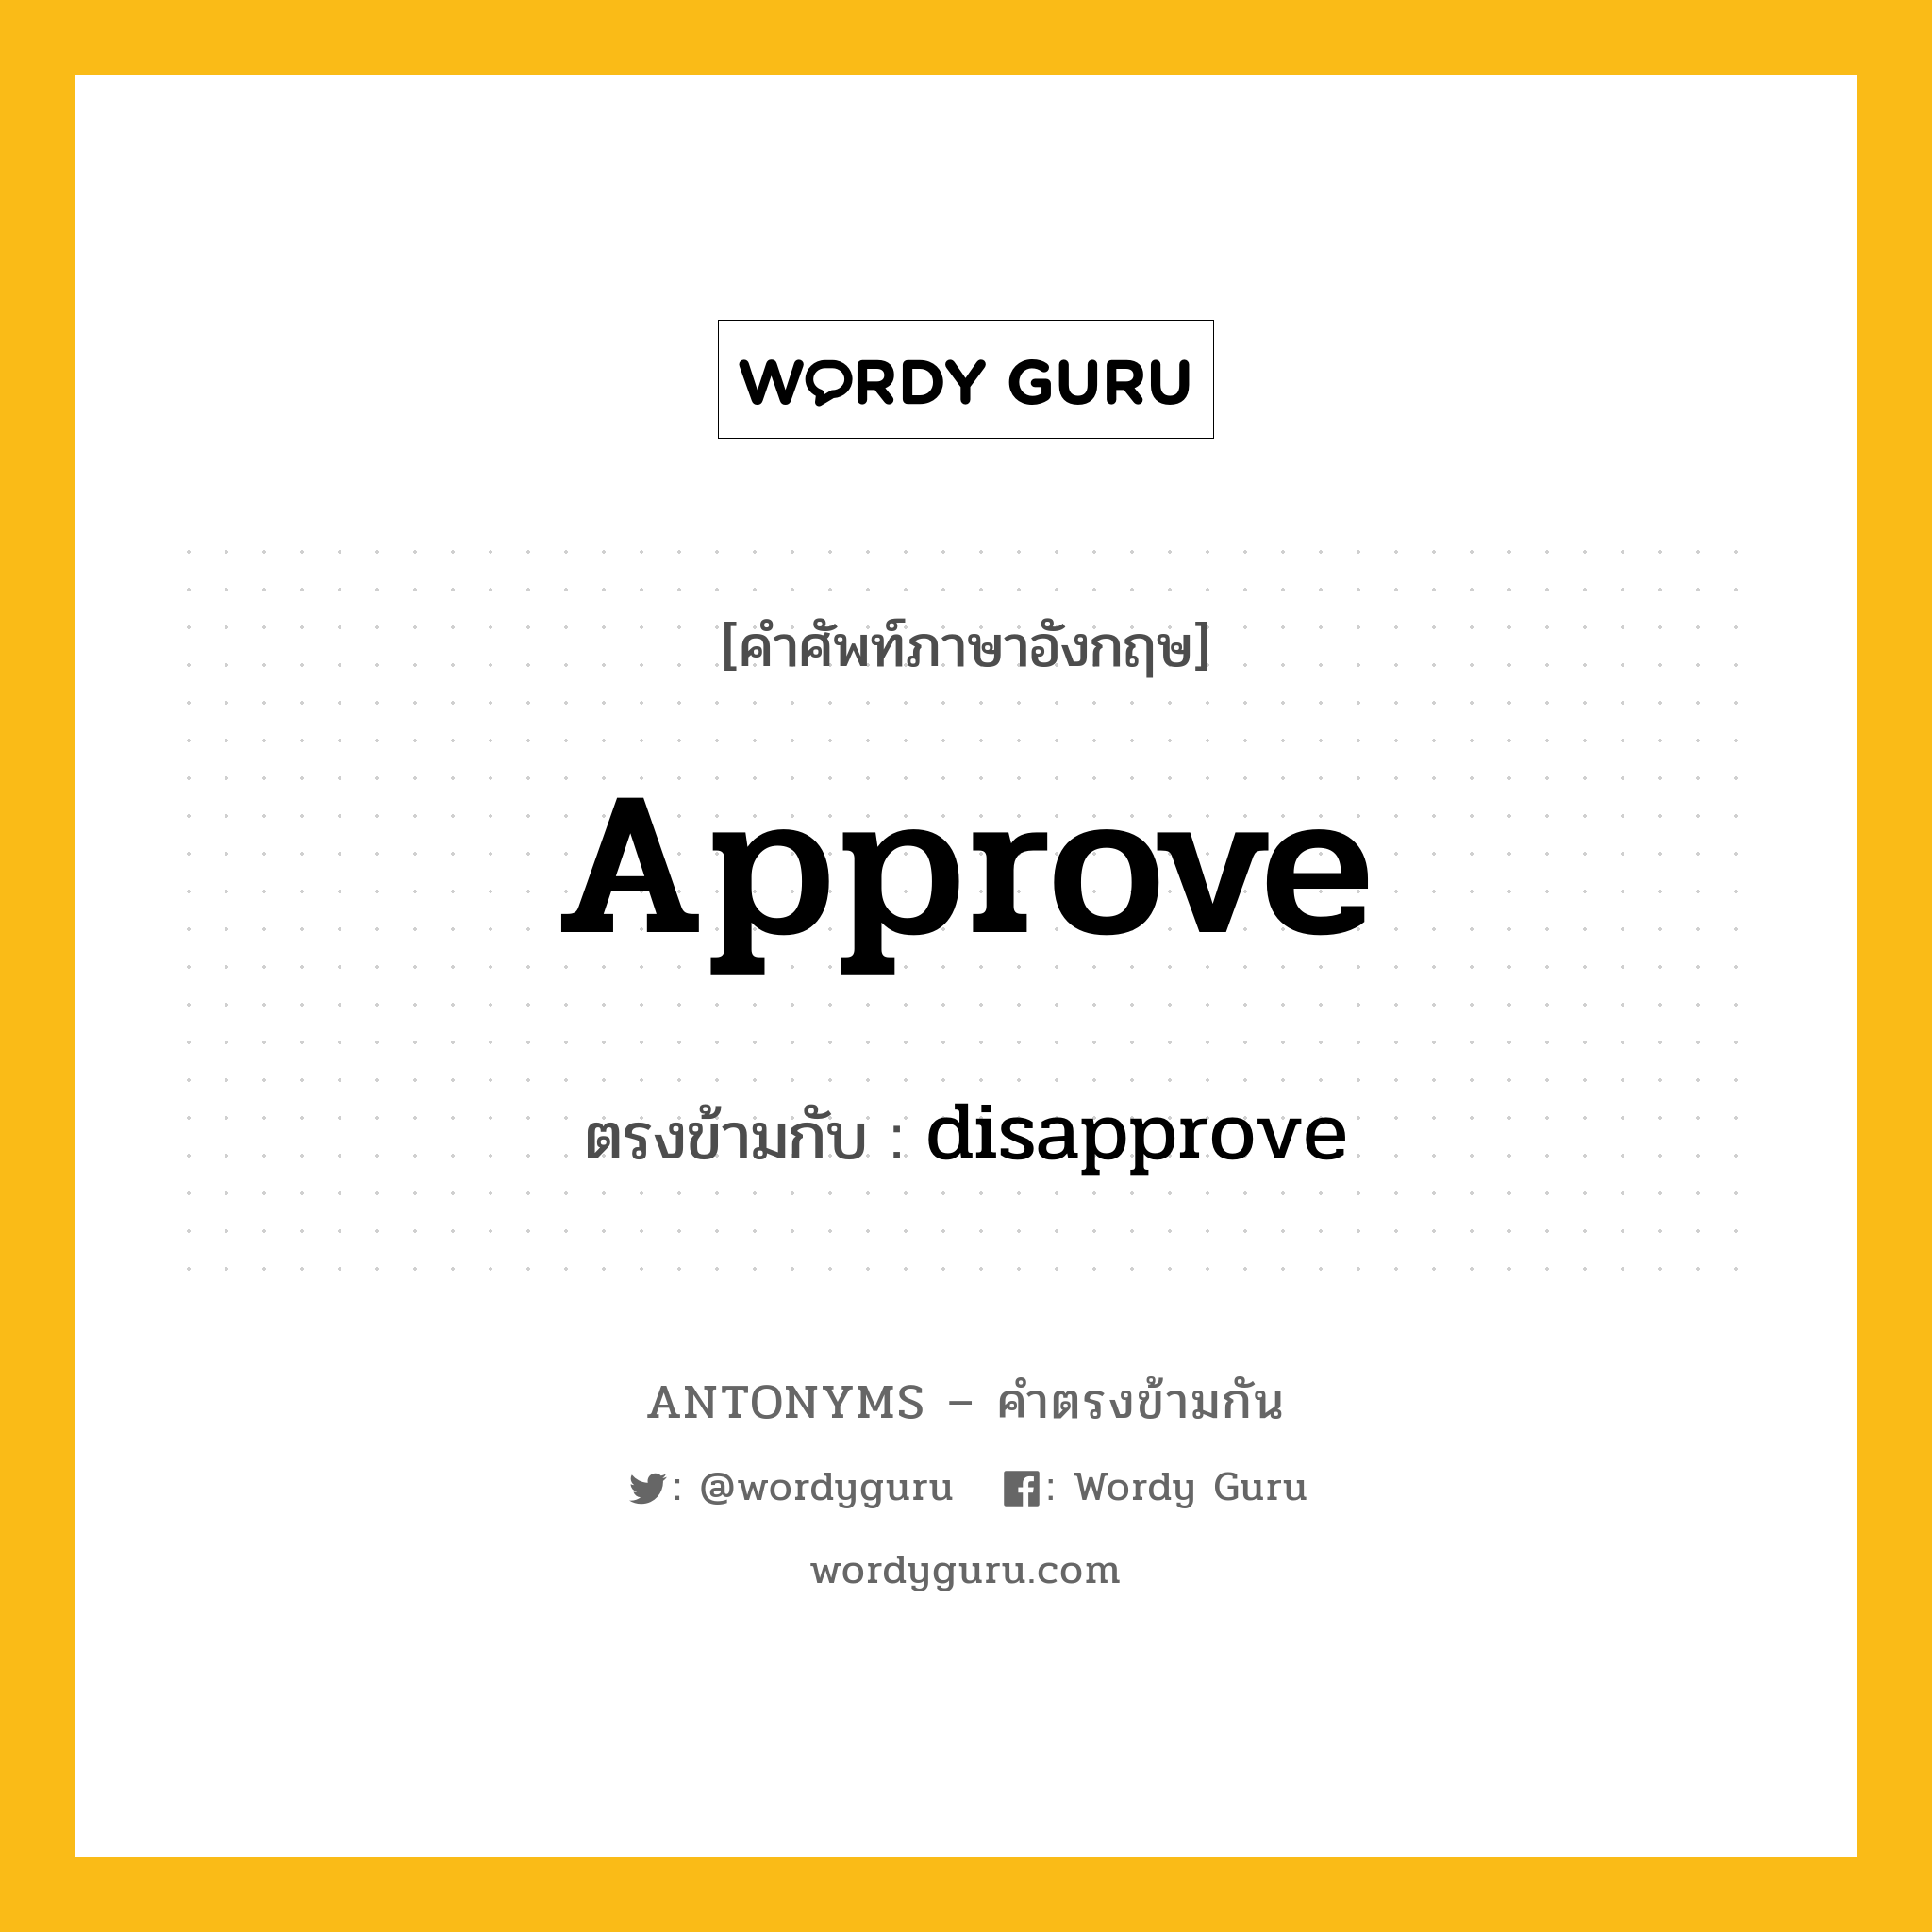 approve เป็นคำตรงข้ามกับคำไหนบ้าง?, คำศัพท์ภาษาอังกฤษ approve ตรงข้ามกับ disapprove หมวด disapprove